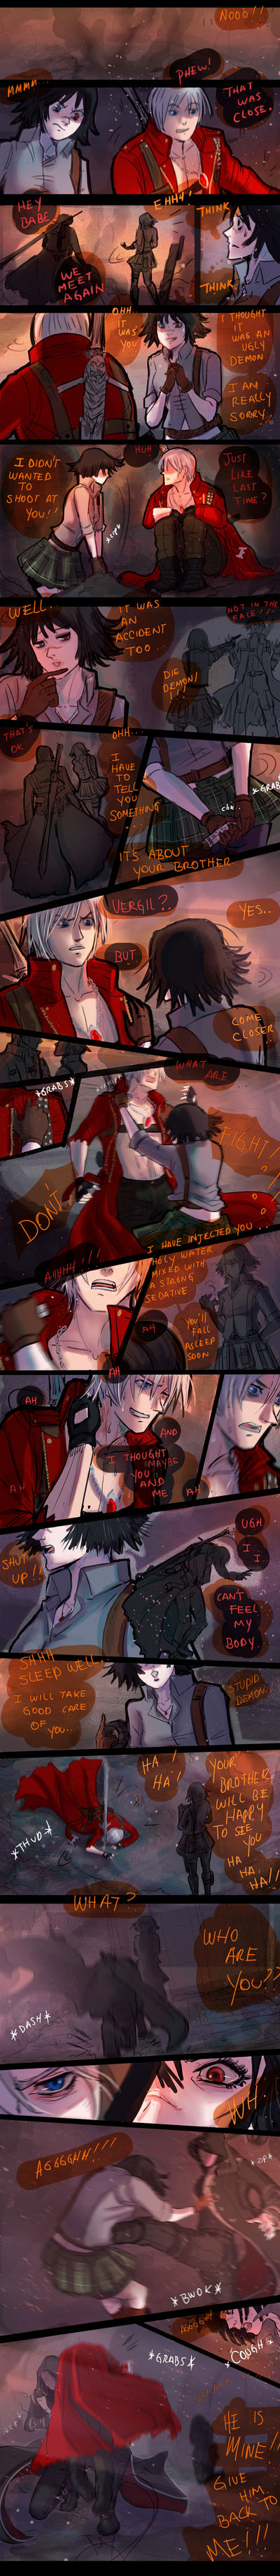 Dante Must Die by pookyhuntress on DeviantArt